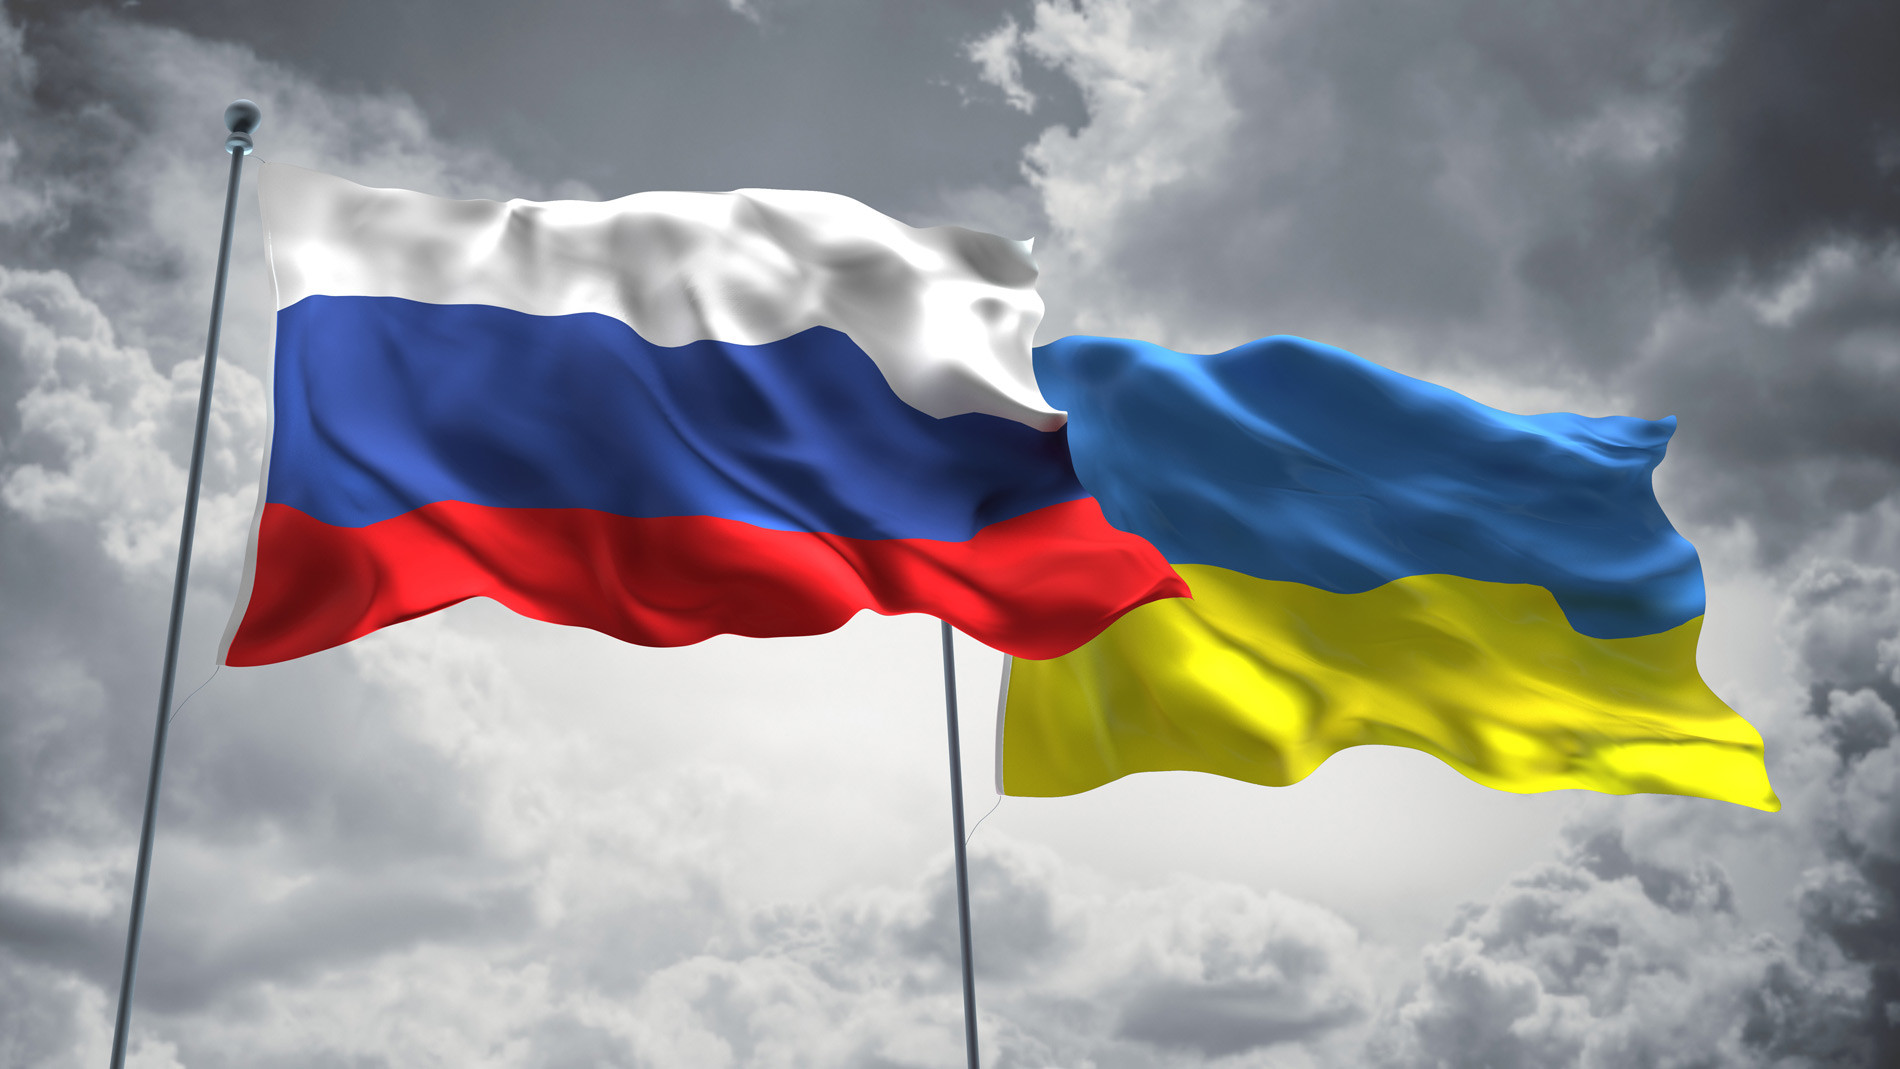 Rusya- Ukrayna savaşı neden başladı? Rusya, Ukrayna ile neden anlaşamıyor? 3. Dünya savaşı çıkar mı?